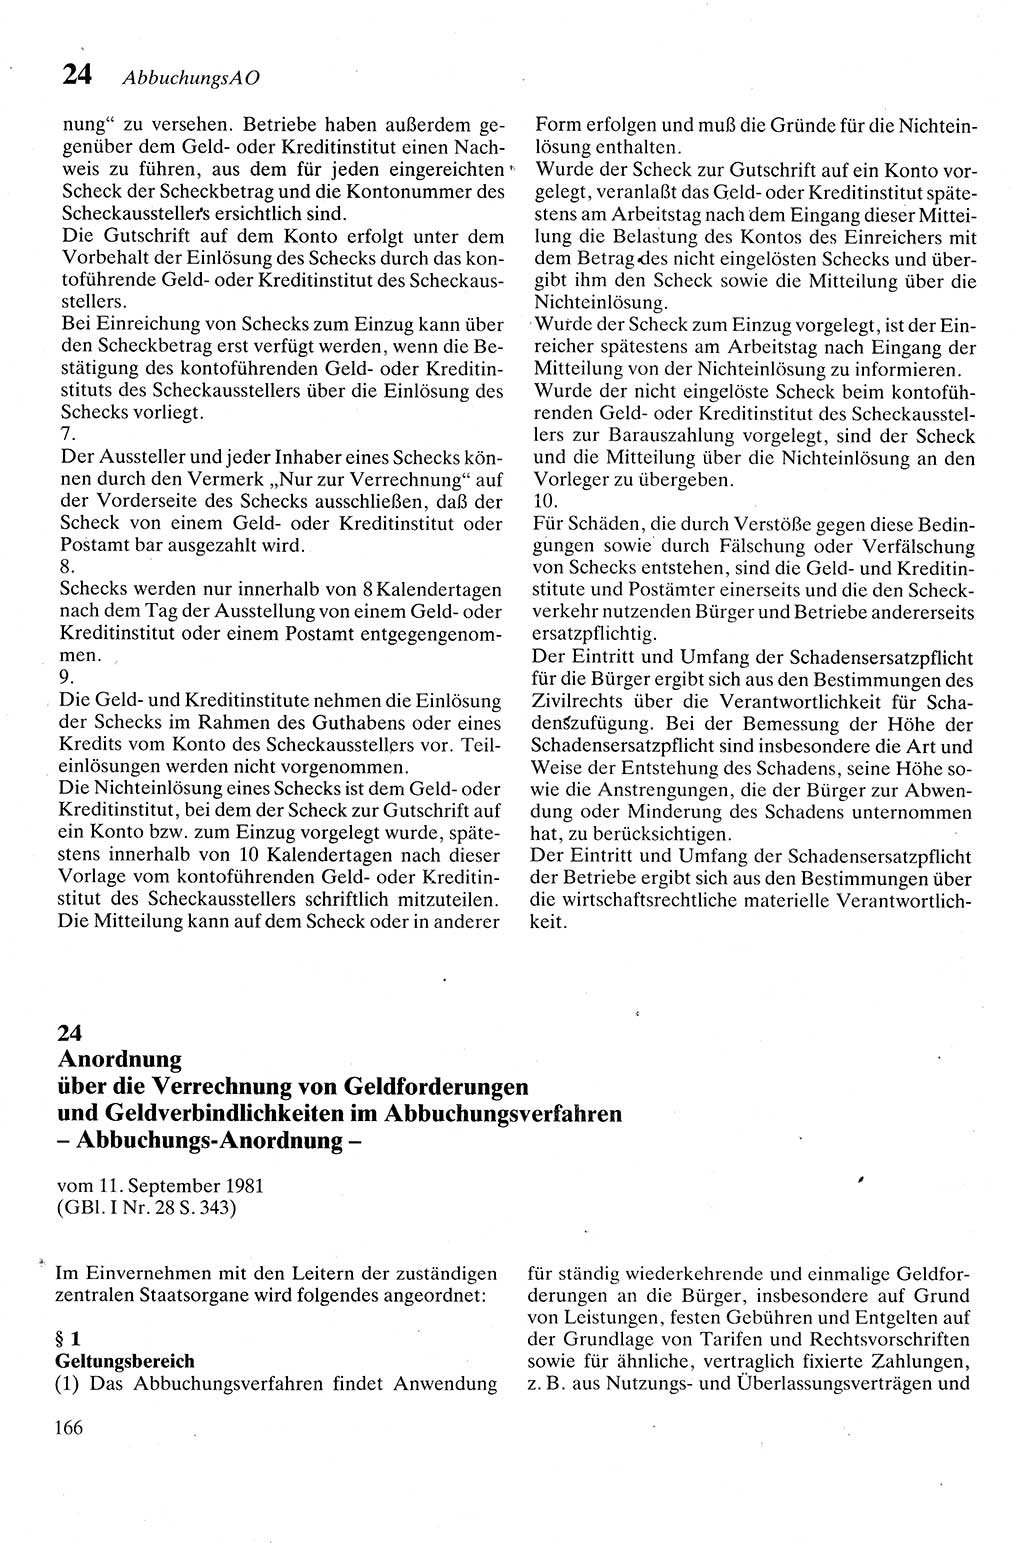 Zivilgesetzbuch (ZVG) sowie angrenzende Gesetze und Bestimmungen [Deutsche Demokratische Republik (DDR)] 1975, Seite 166 (ZGB Ges. Best. DDR 1975, S. 166)